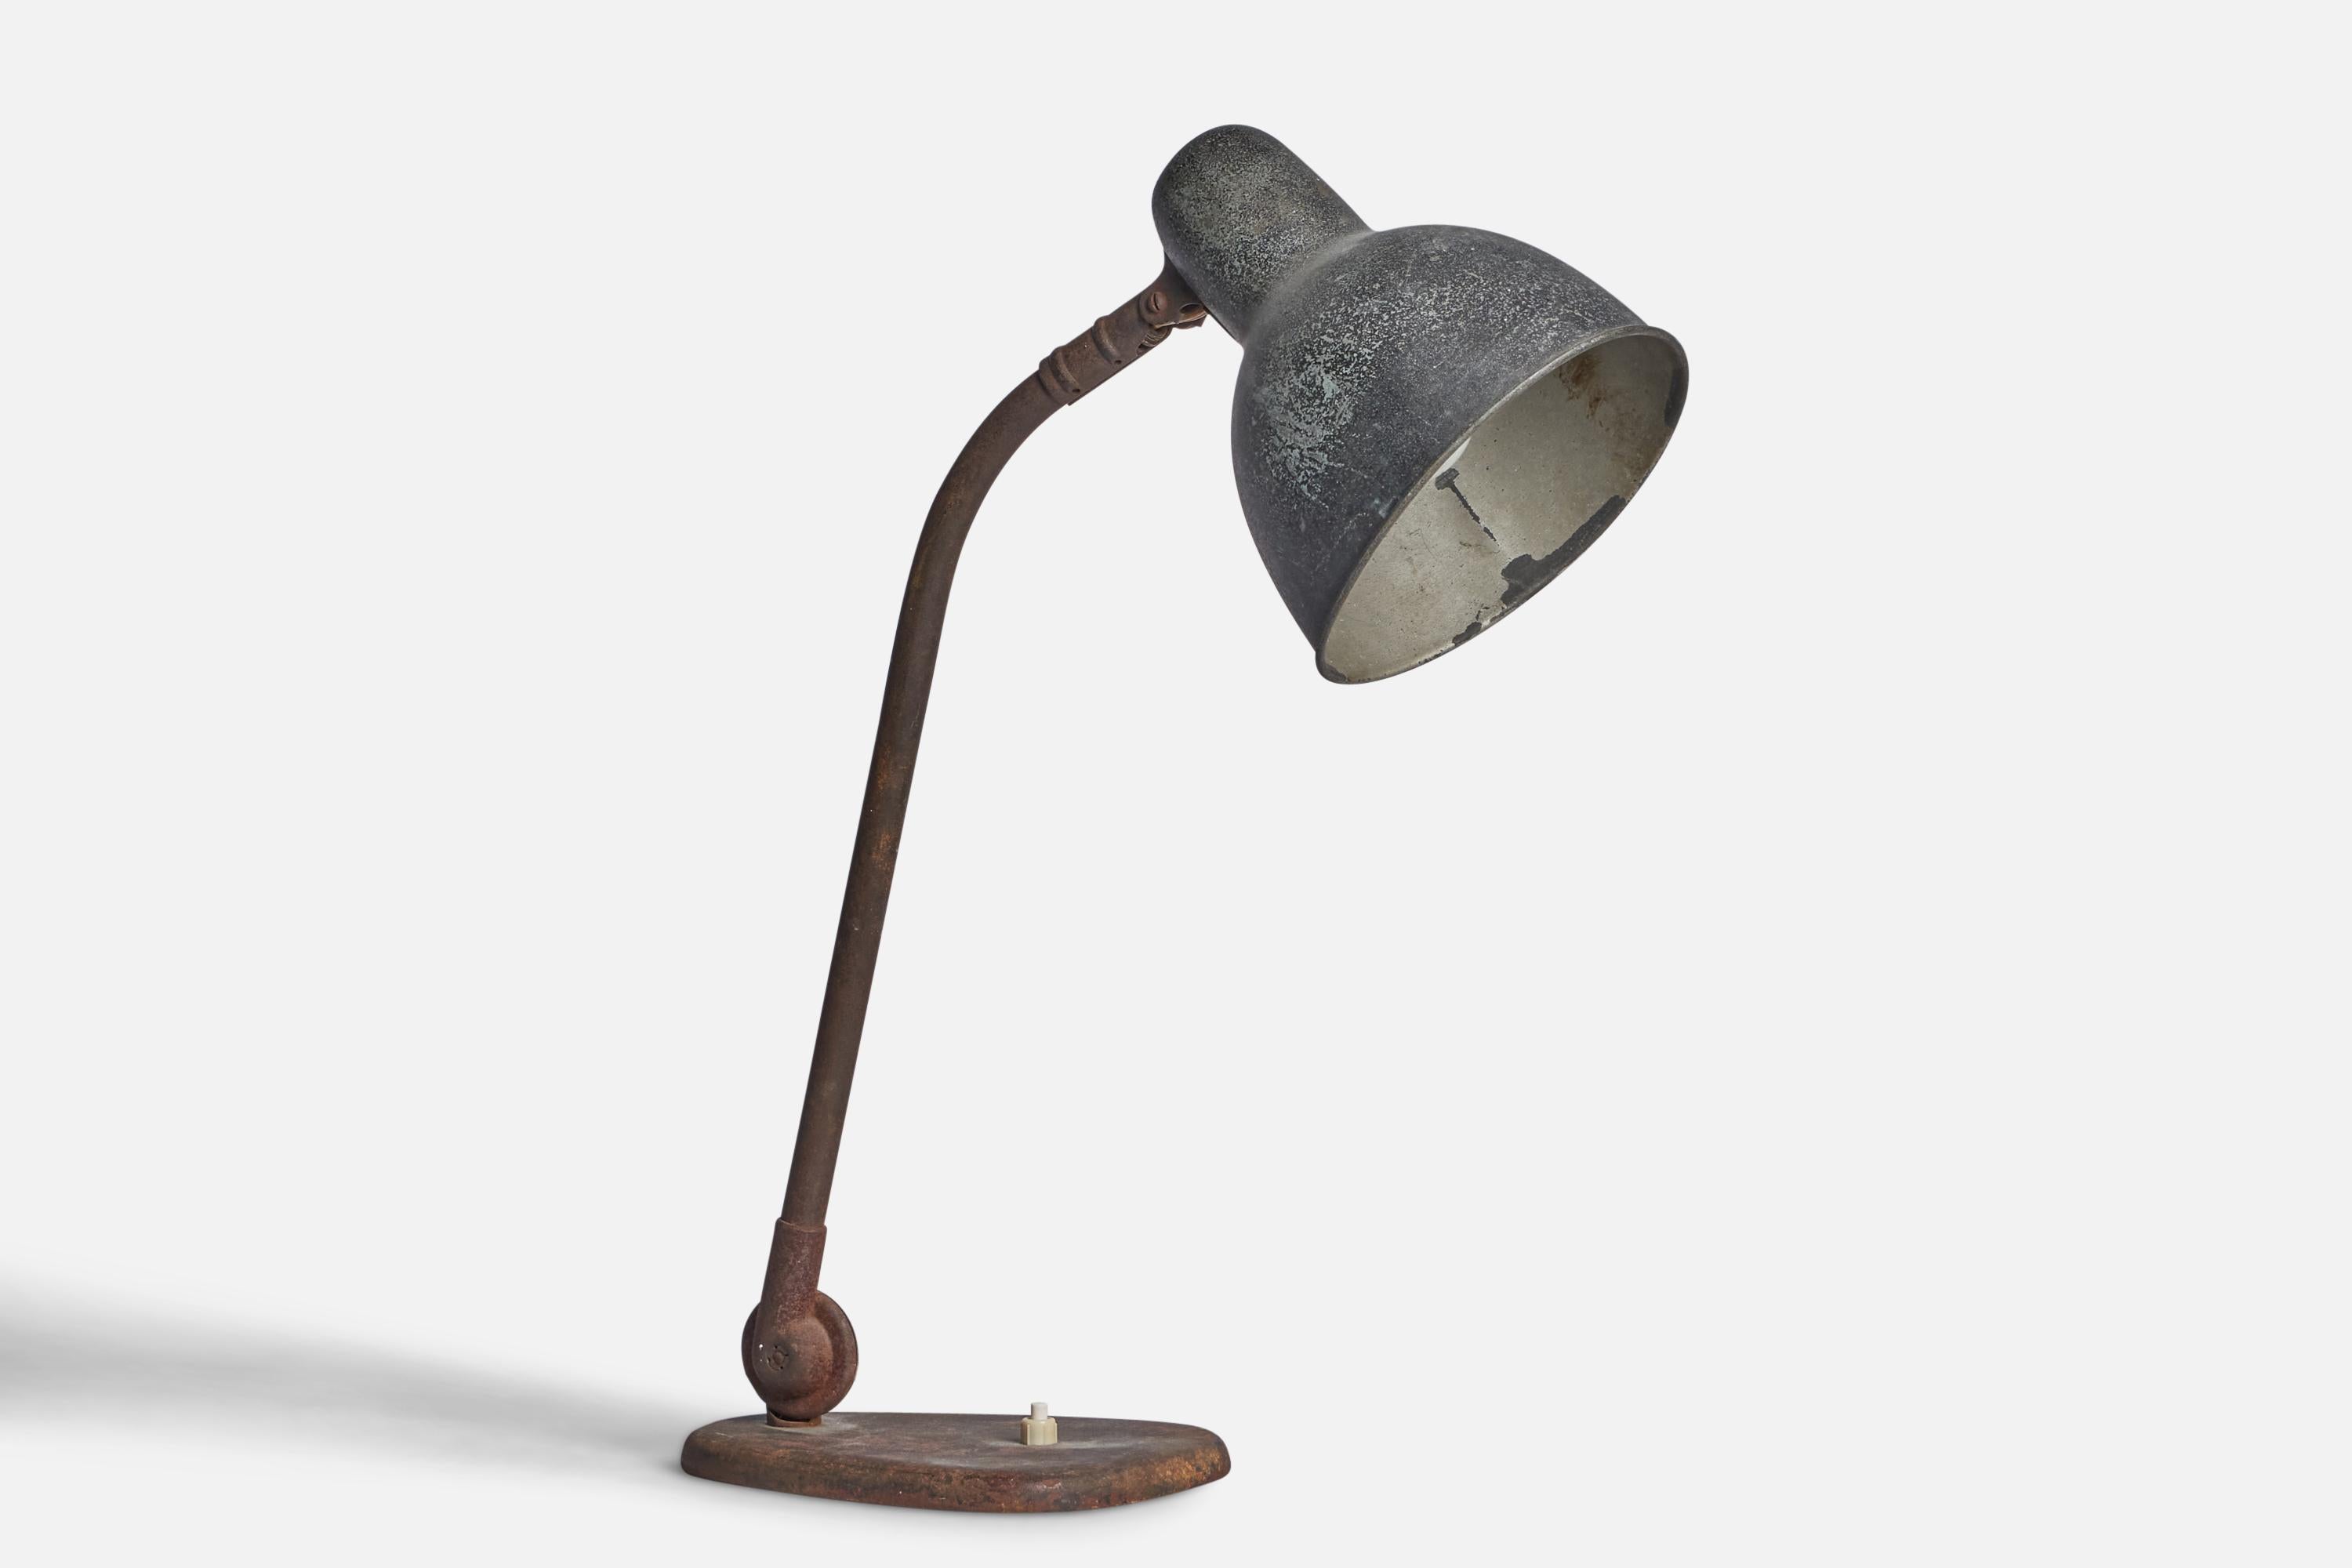 Lampe de table réglable en métal, conçue et produite en Allemagne, années 1930.

Dimensions de la lampe (pouces) : 18.9